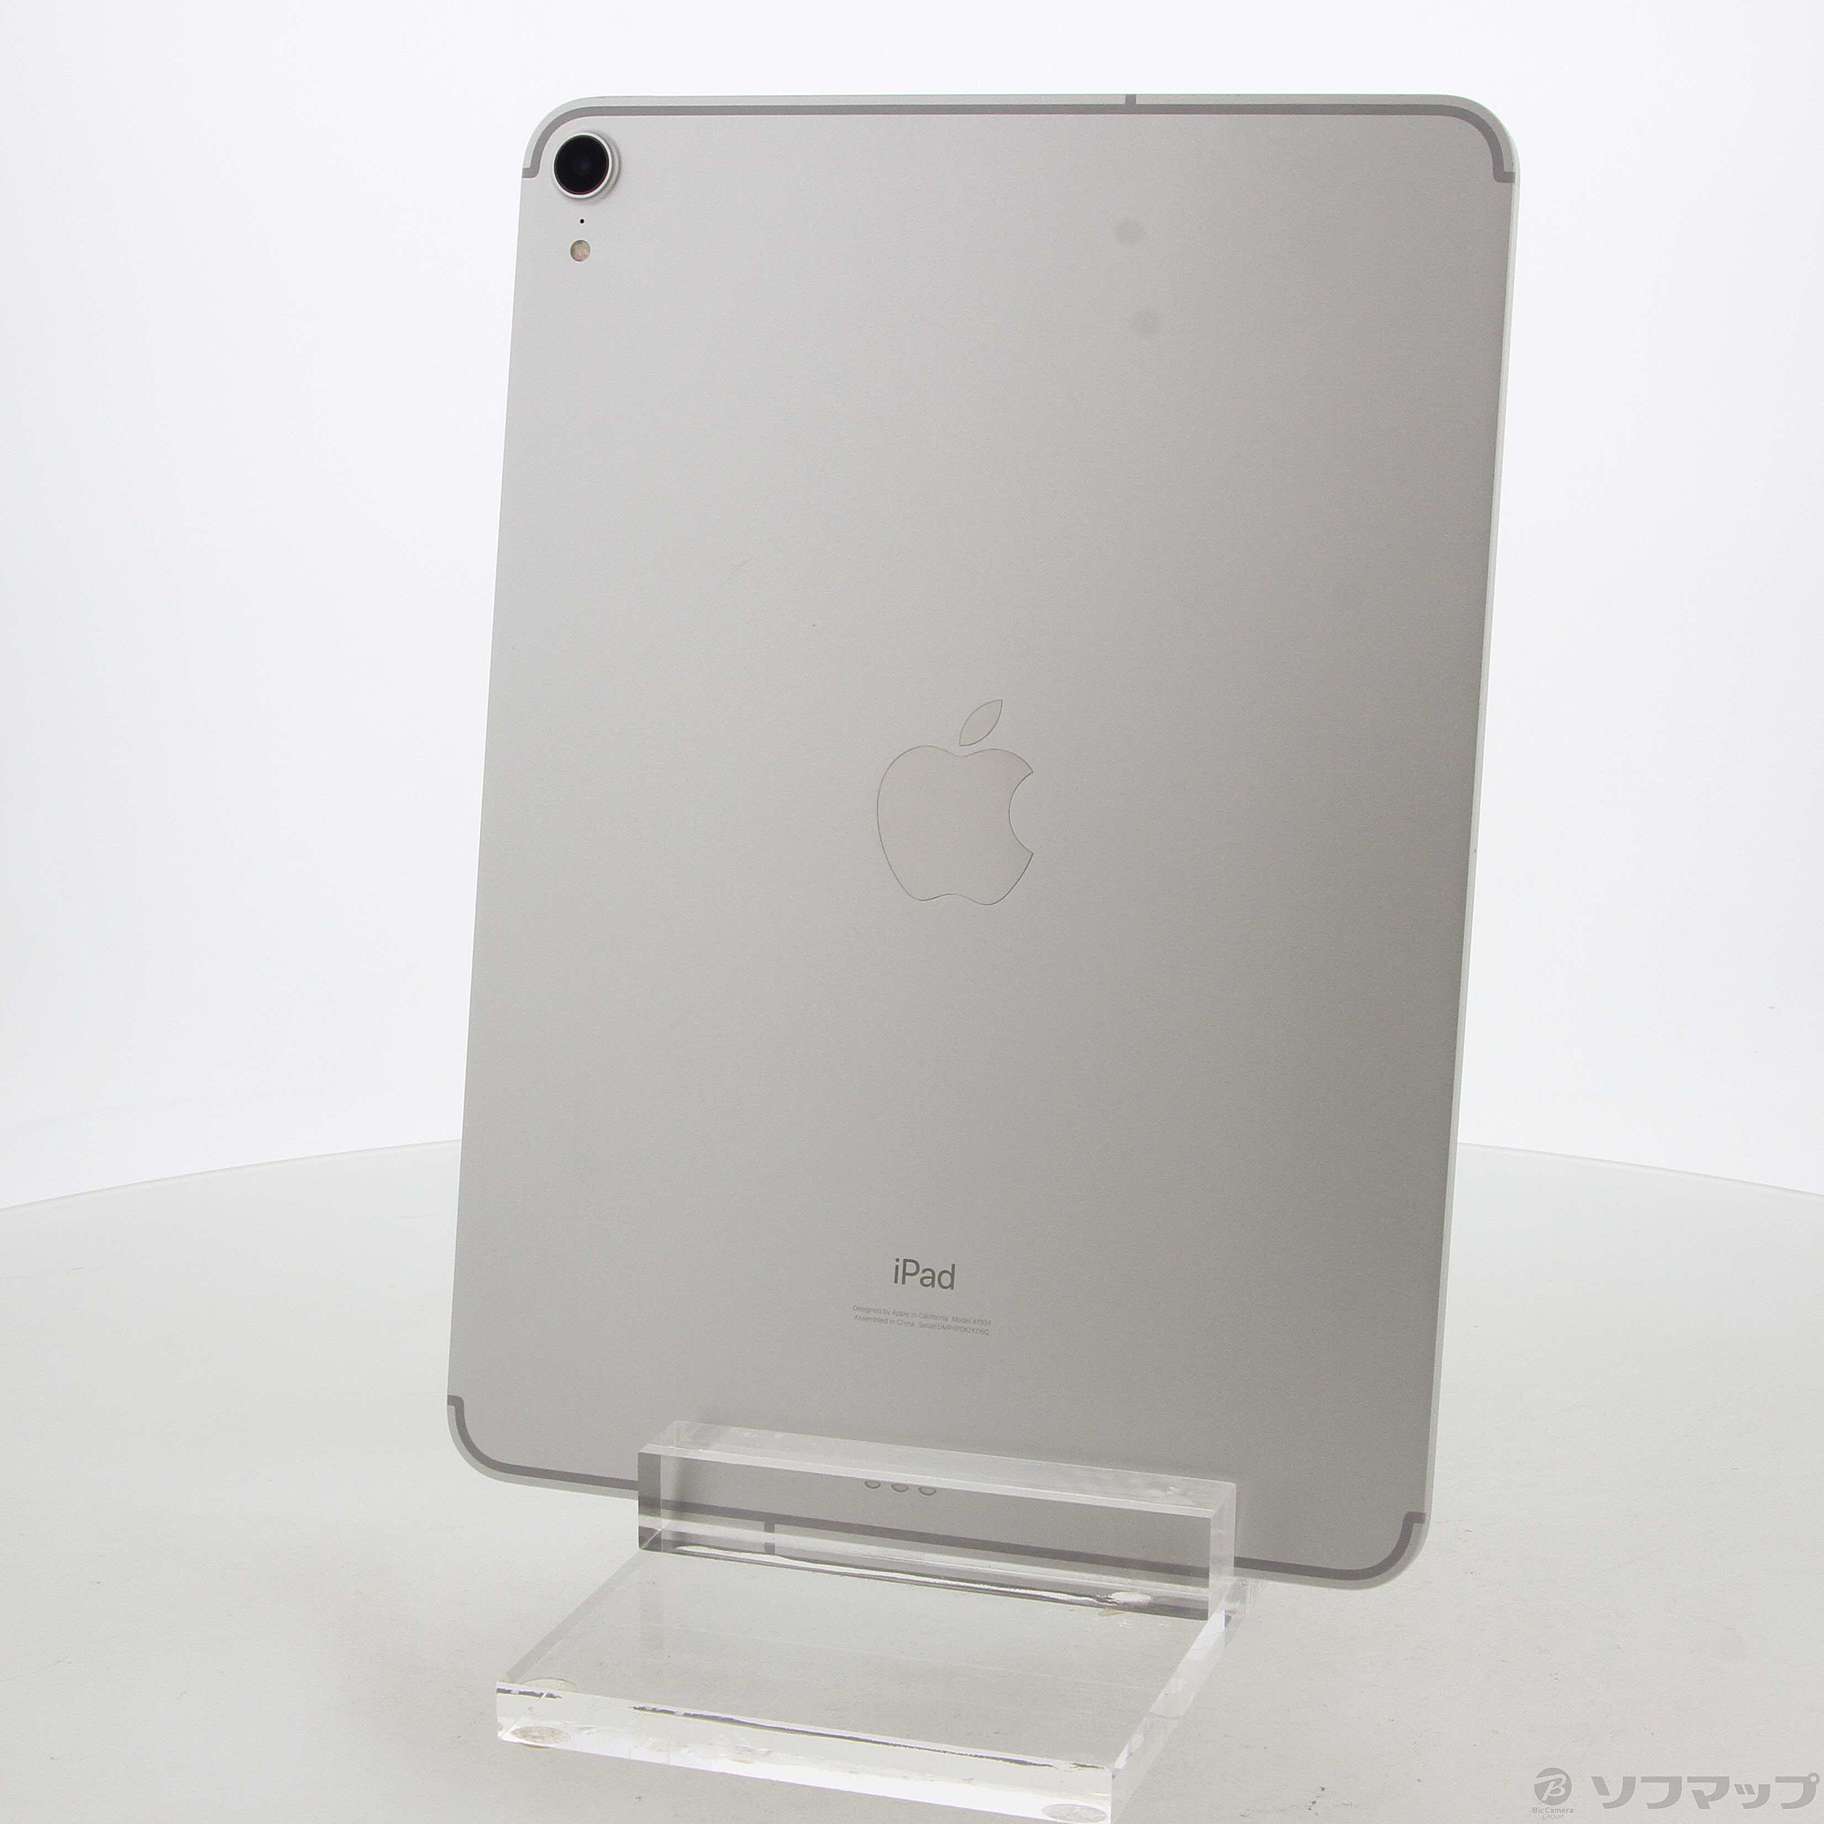 【ドコモ】iPad Pro 11(64GB) シルバー